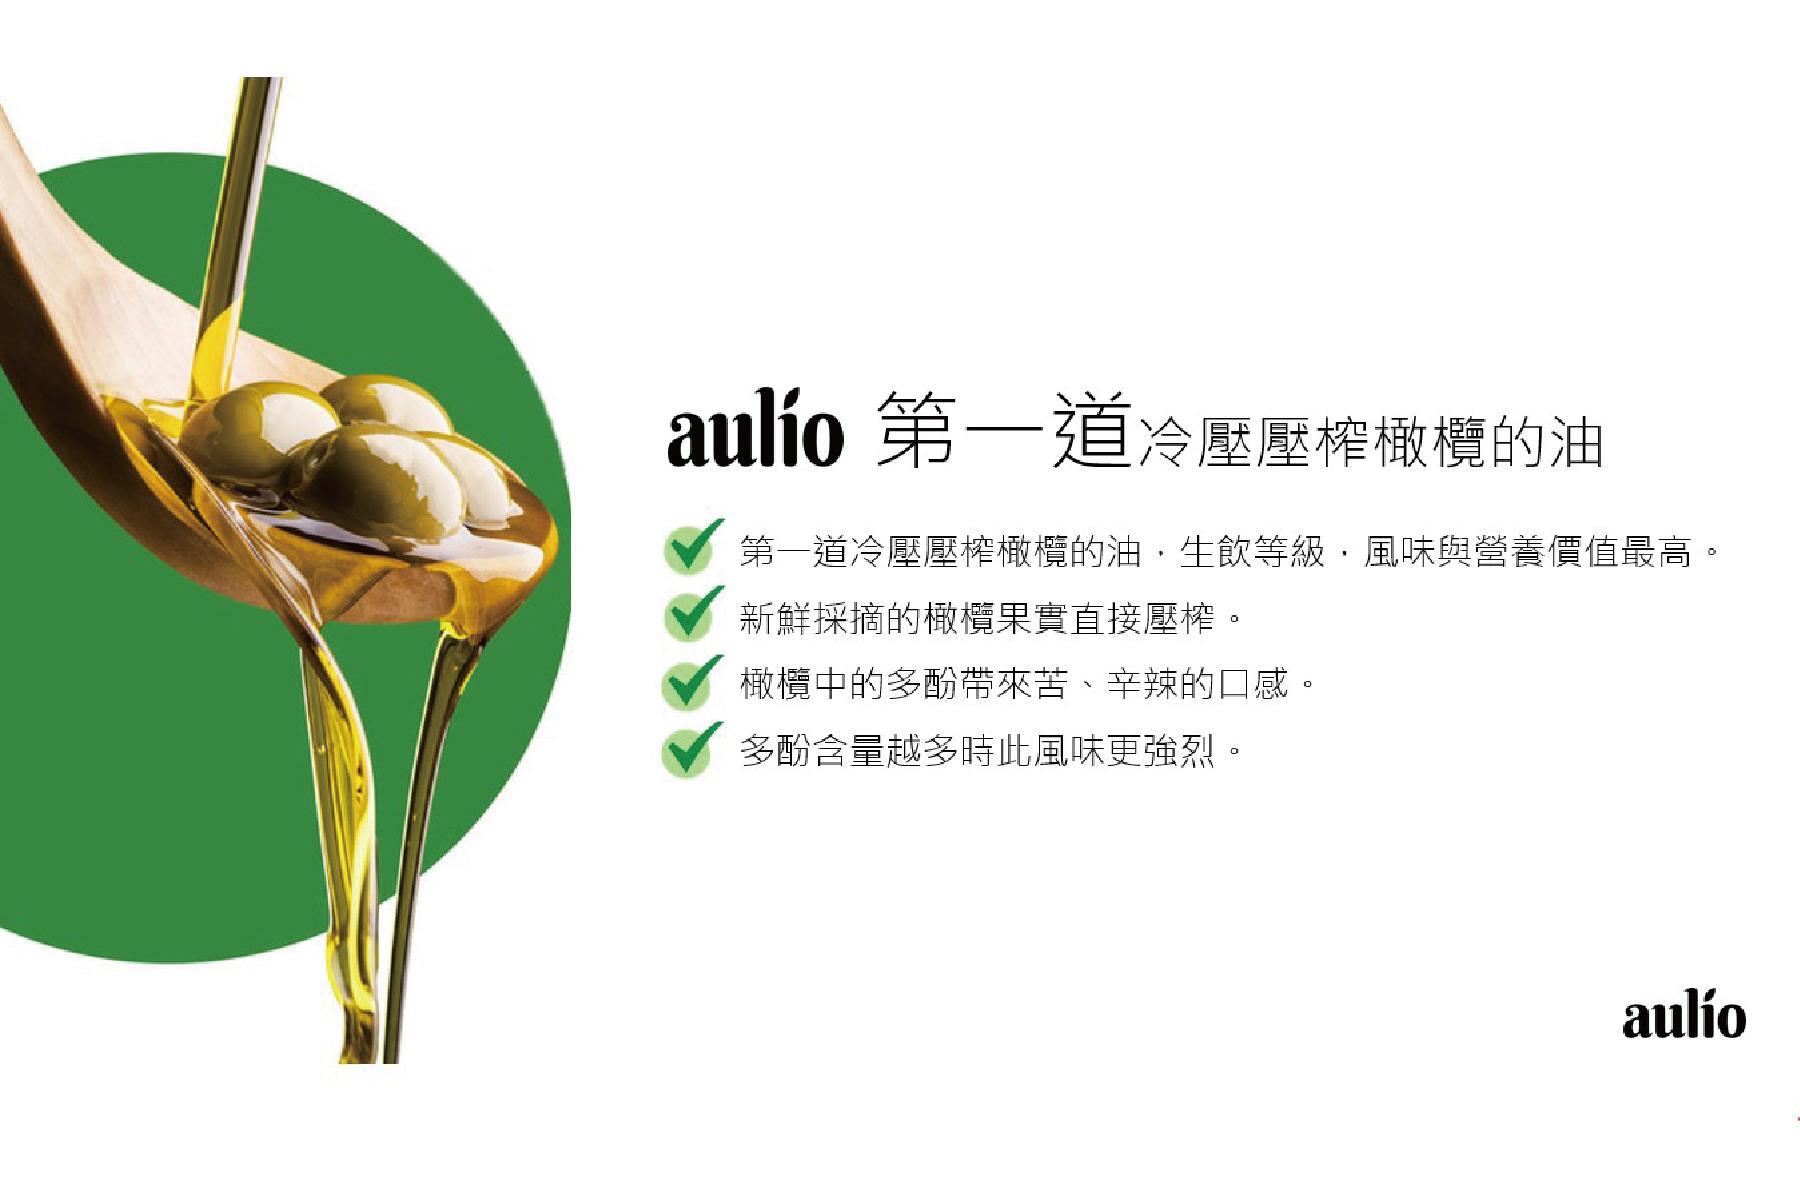 【aulio】澳洲天然特級初榨橄欖油4瓶 提貨券2